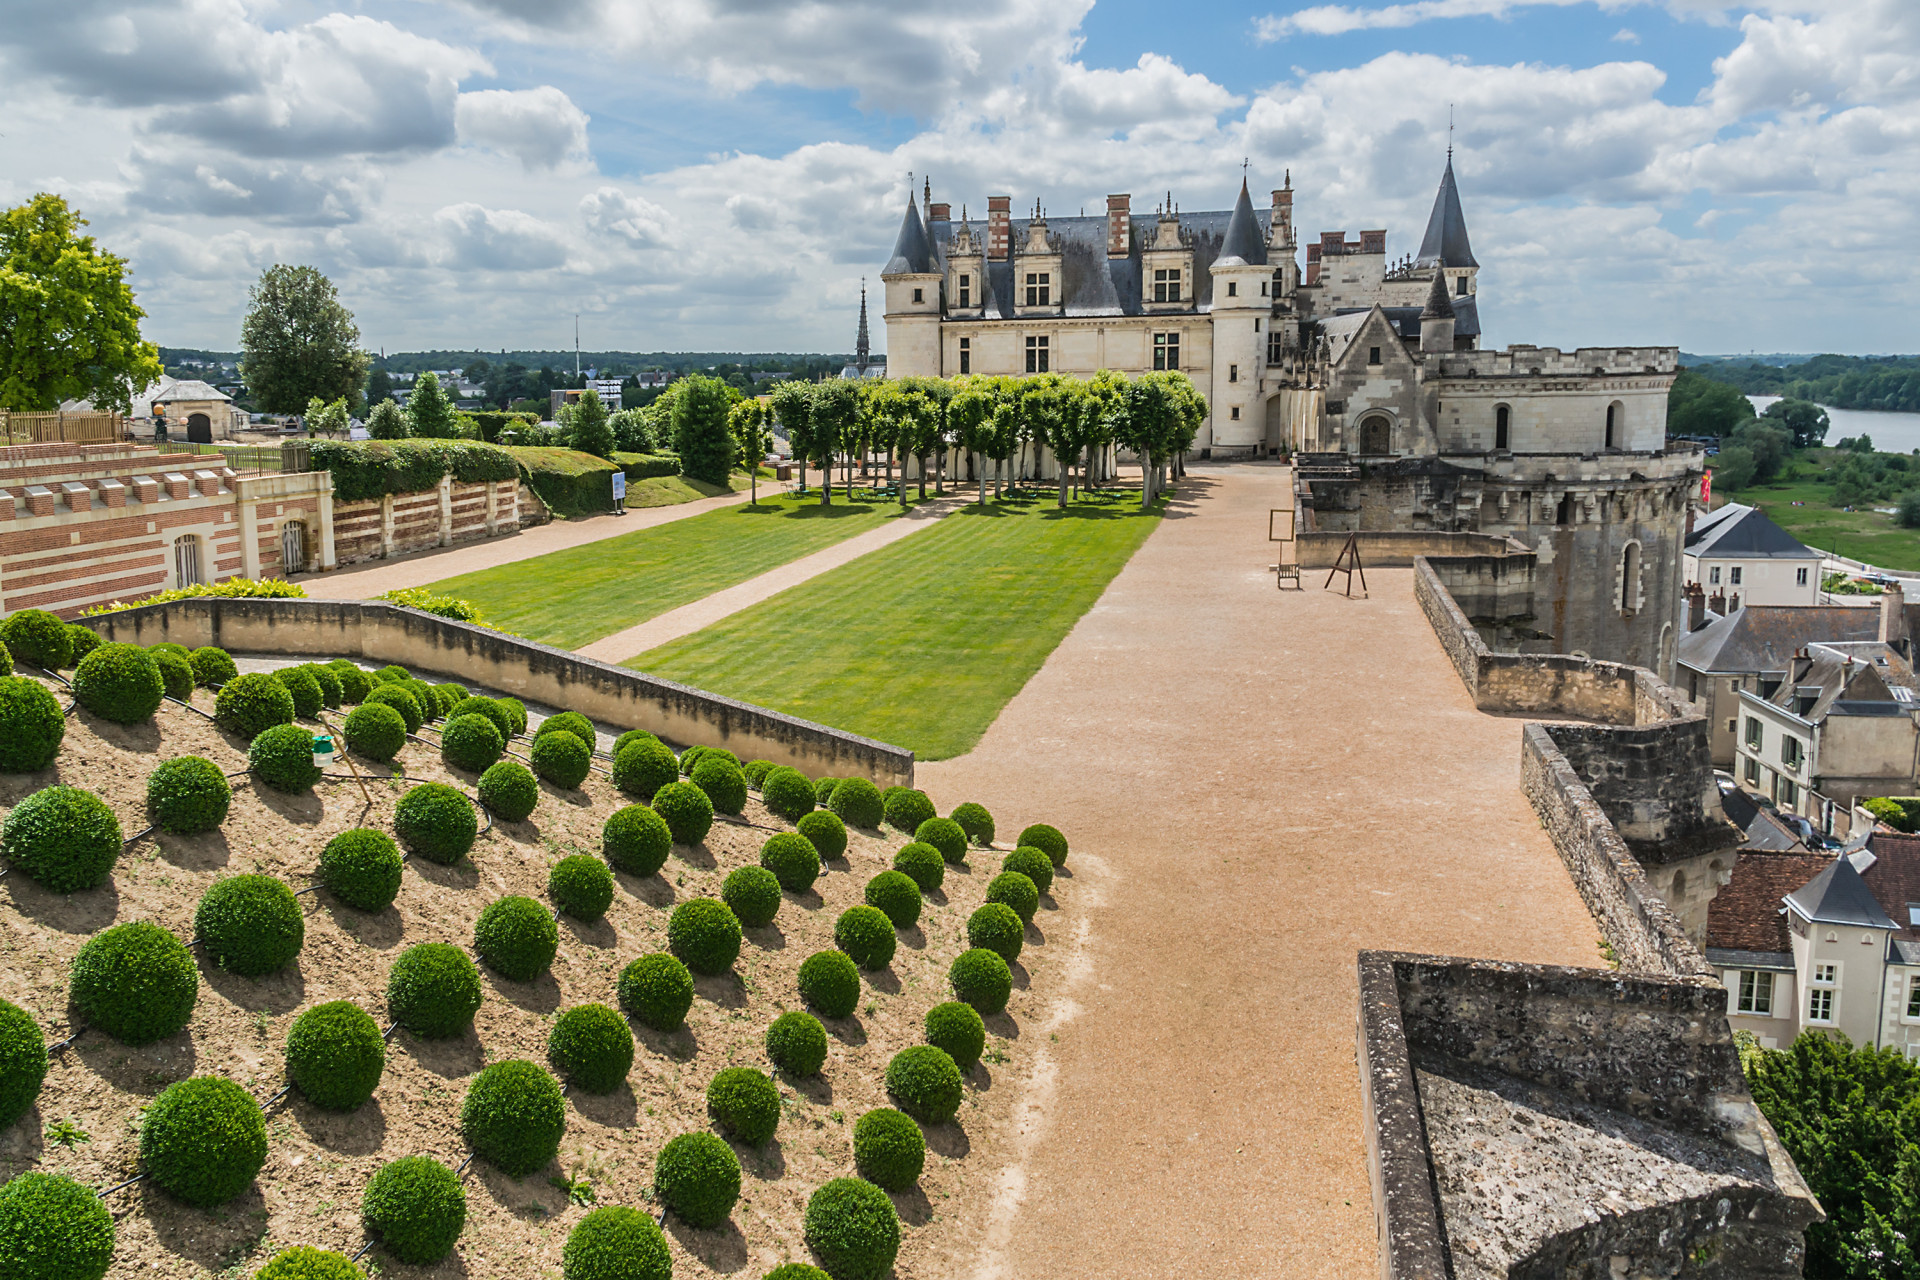 Des rois de France ont fait de ce château leur résidence au cours de la Renaissance.<p>Tu pourrais aussi aimer:<a href="https://www.starsinsider.com/n/158819?utm_source=msn.com&utm_medium=display&utm_campaign=referral_description&utm_content=161049v2"> Quand les stars révèlent leurs complexes...</a></p>